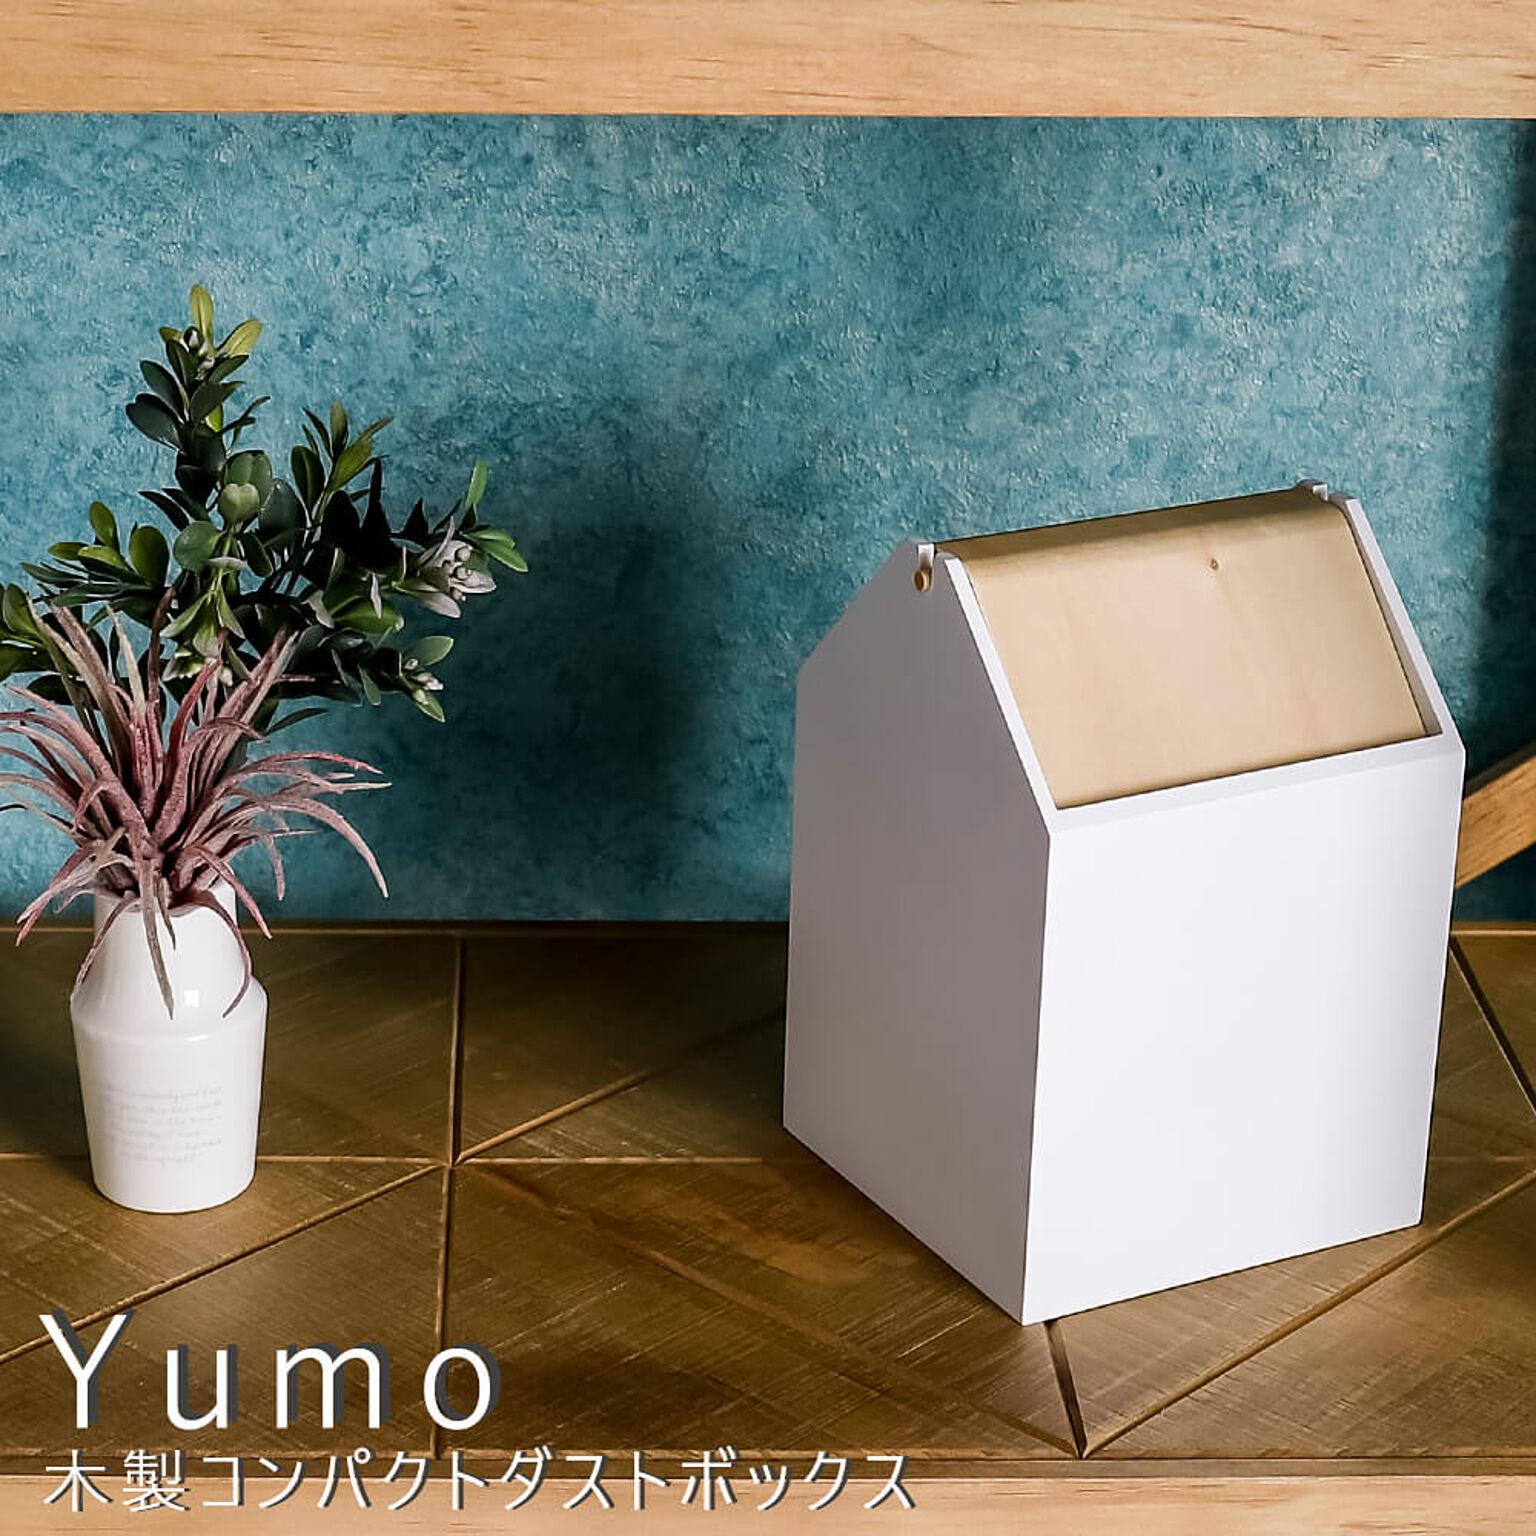 Yumo(ユウモ) 木製コンパクトダストボックス m10360